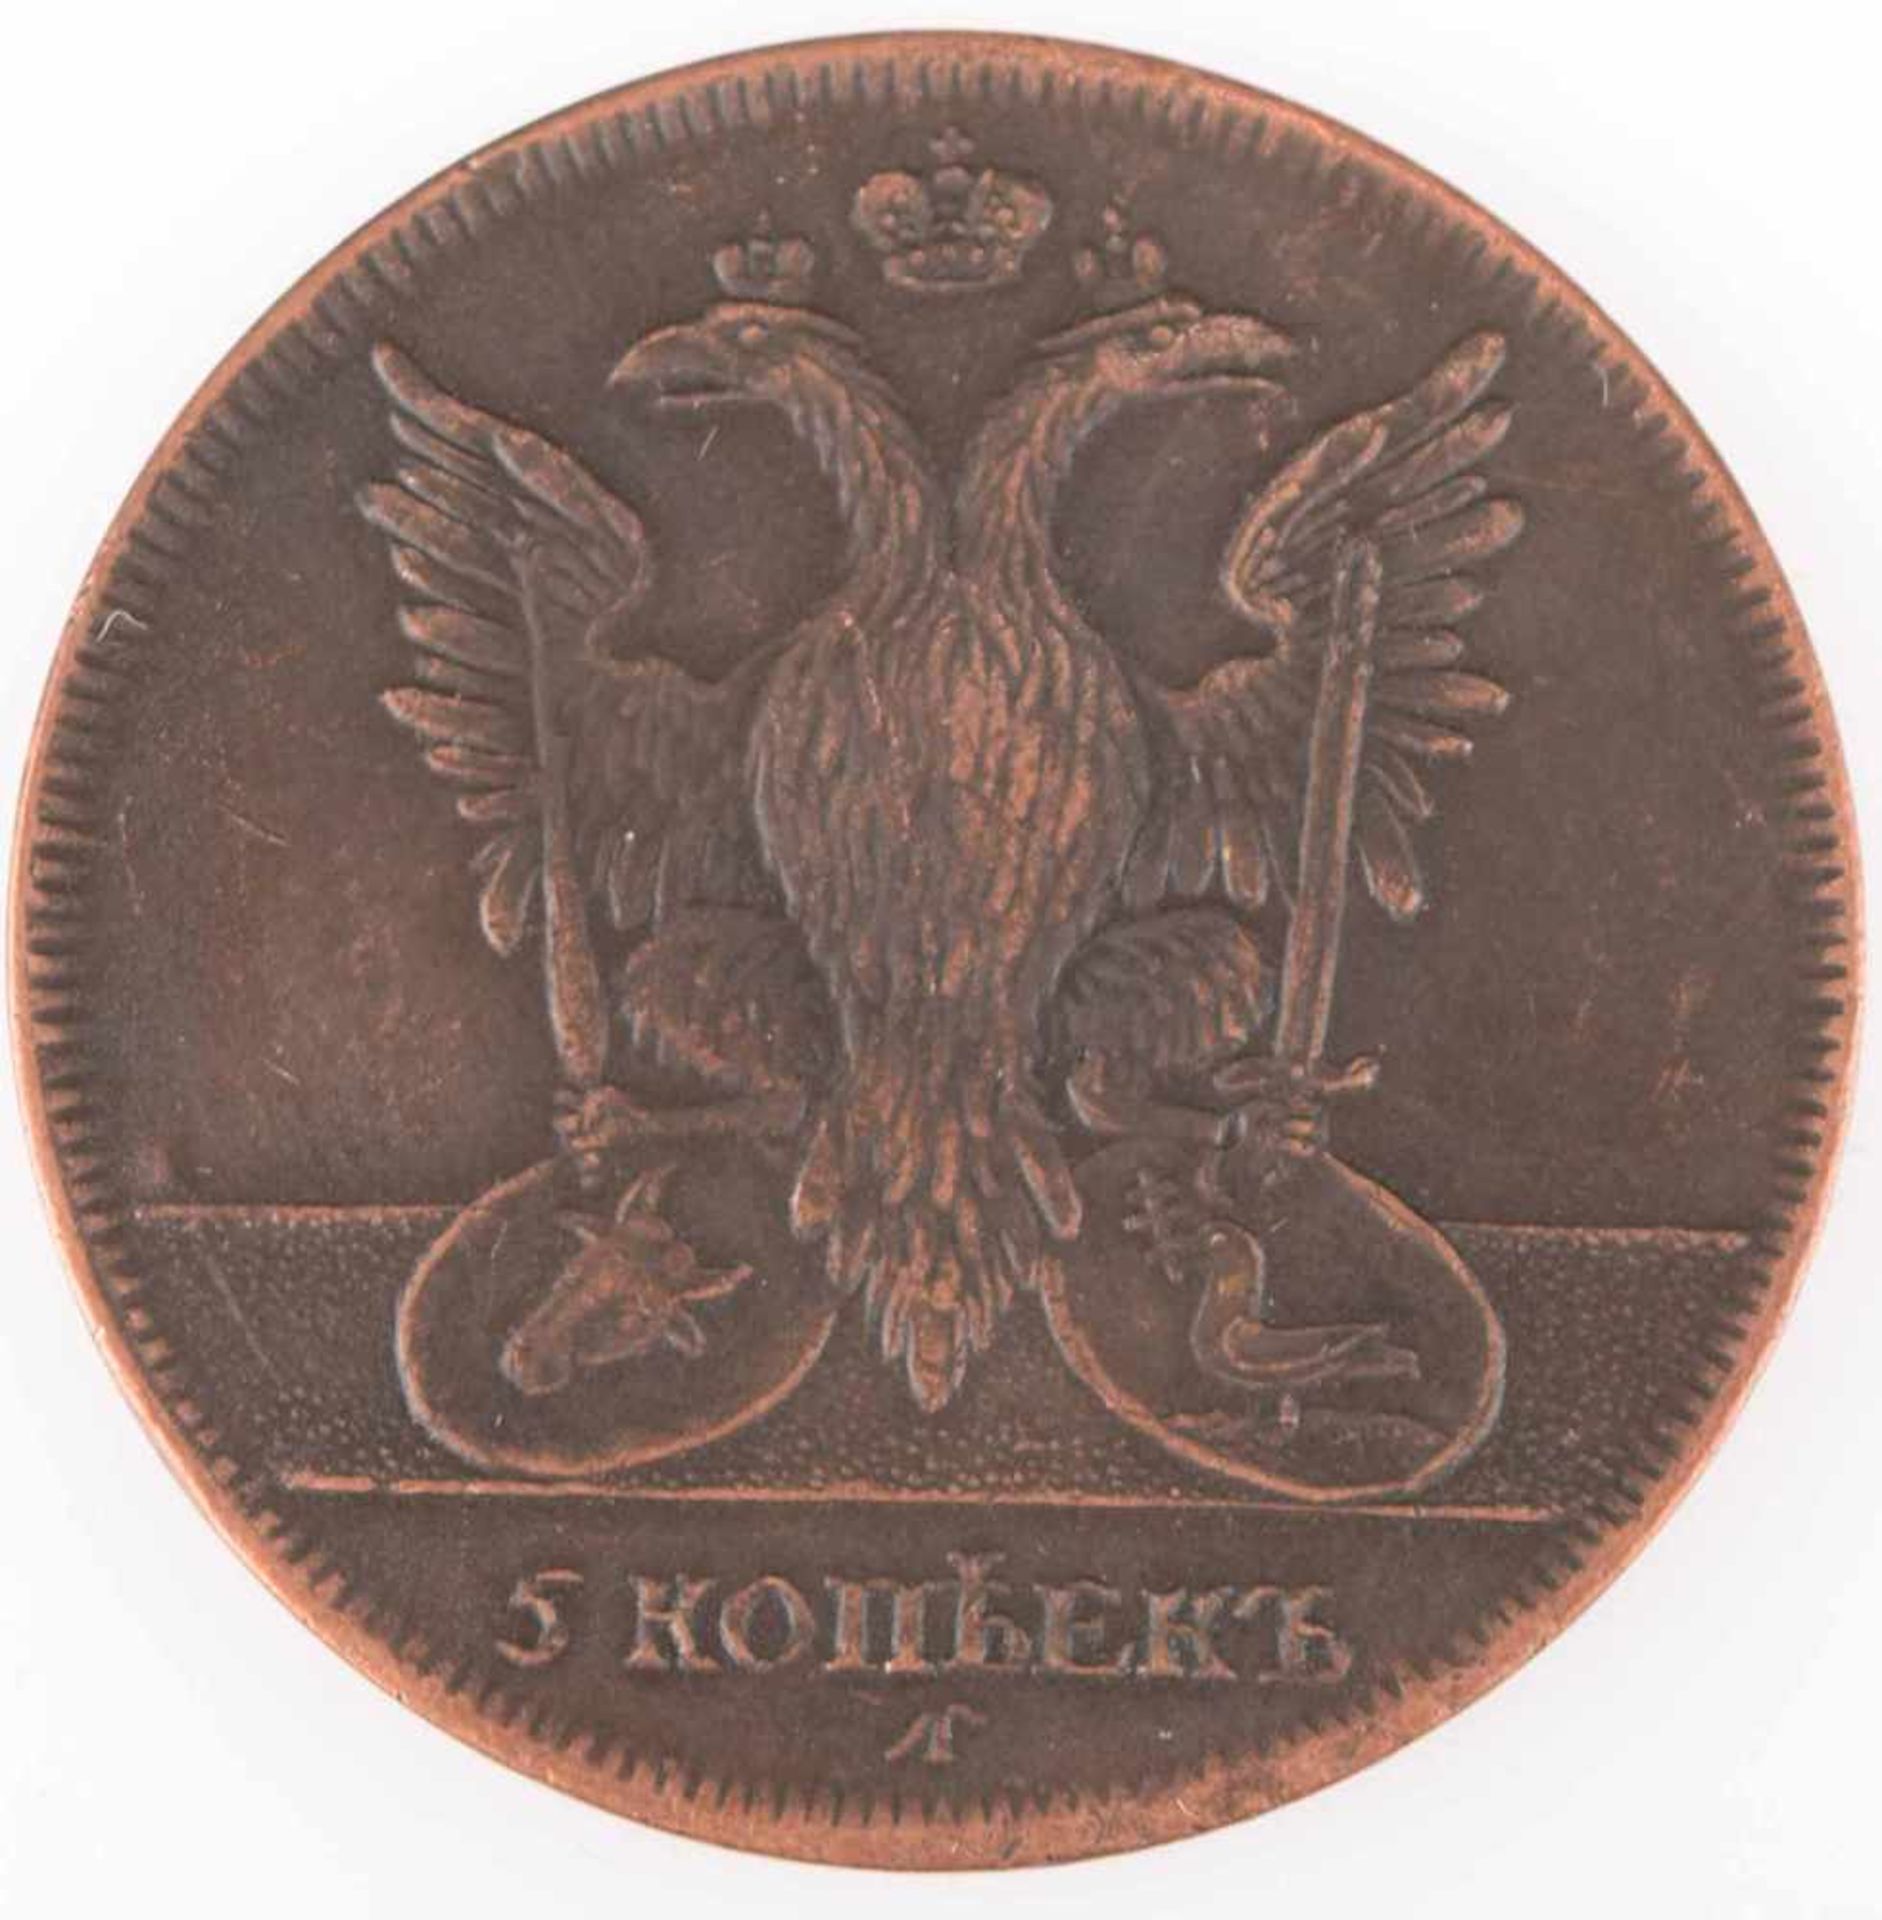 Münze Russland 1771 5 Kopeken, Kupfer, Regierungszeit Katharina II. (1762 - 1796), av. - Bild 3 aus 3